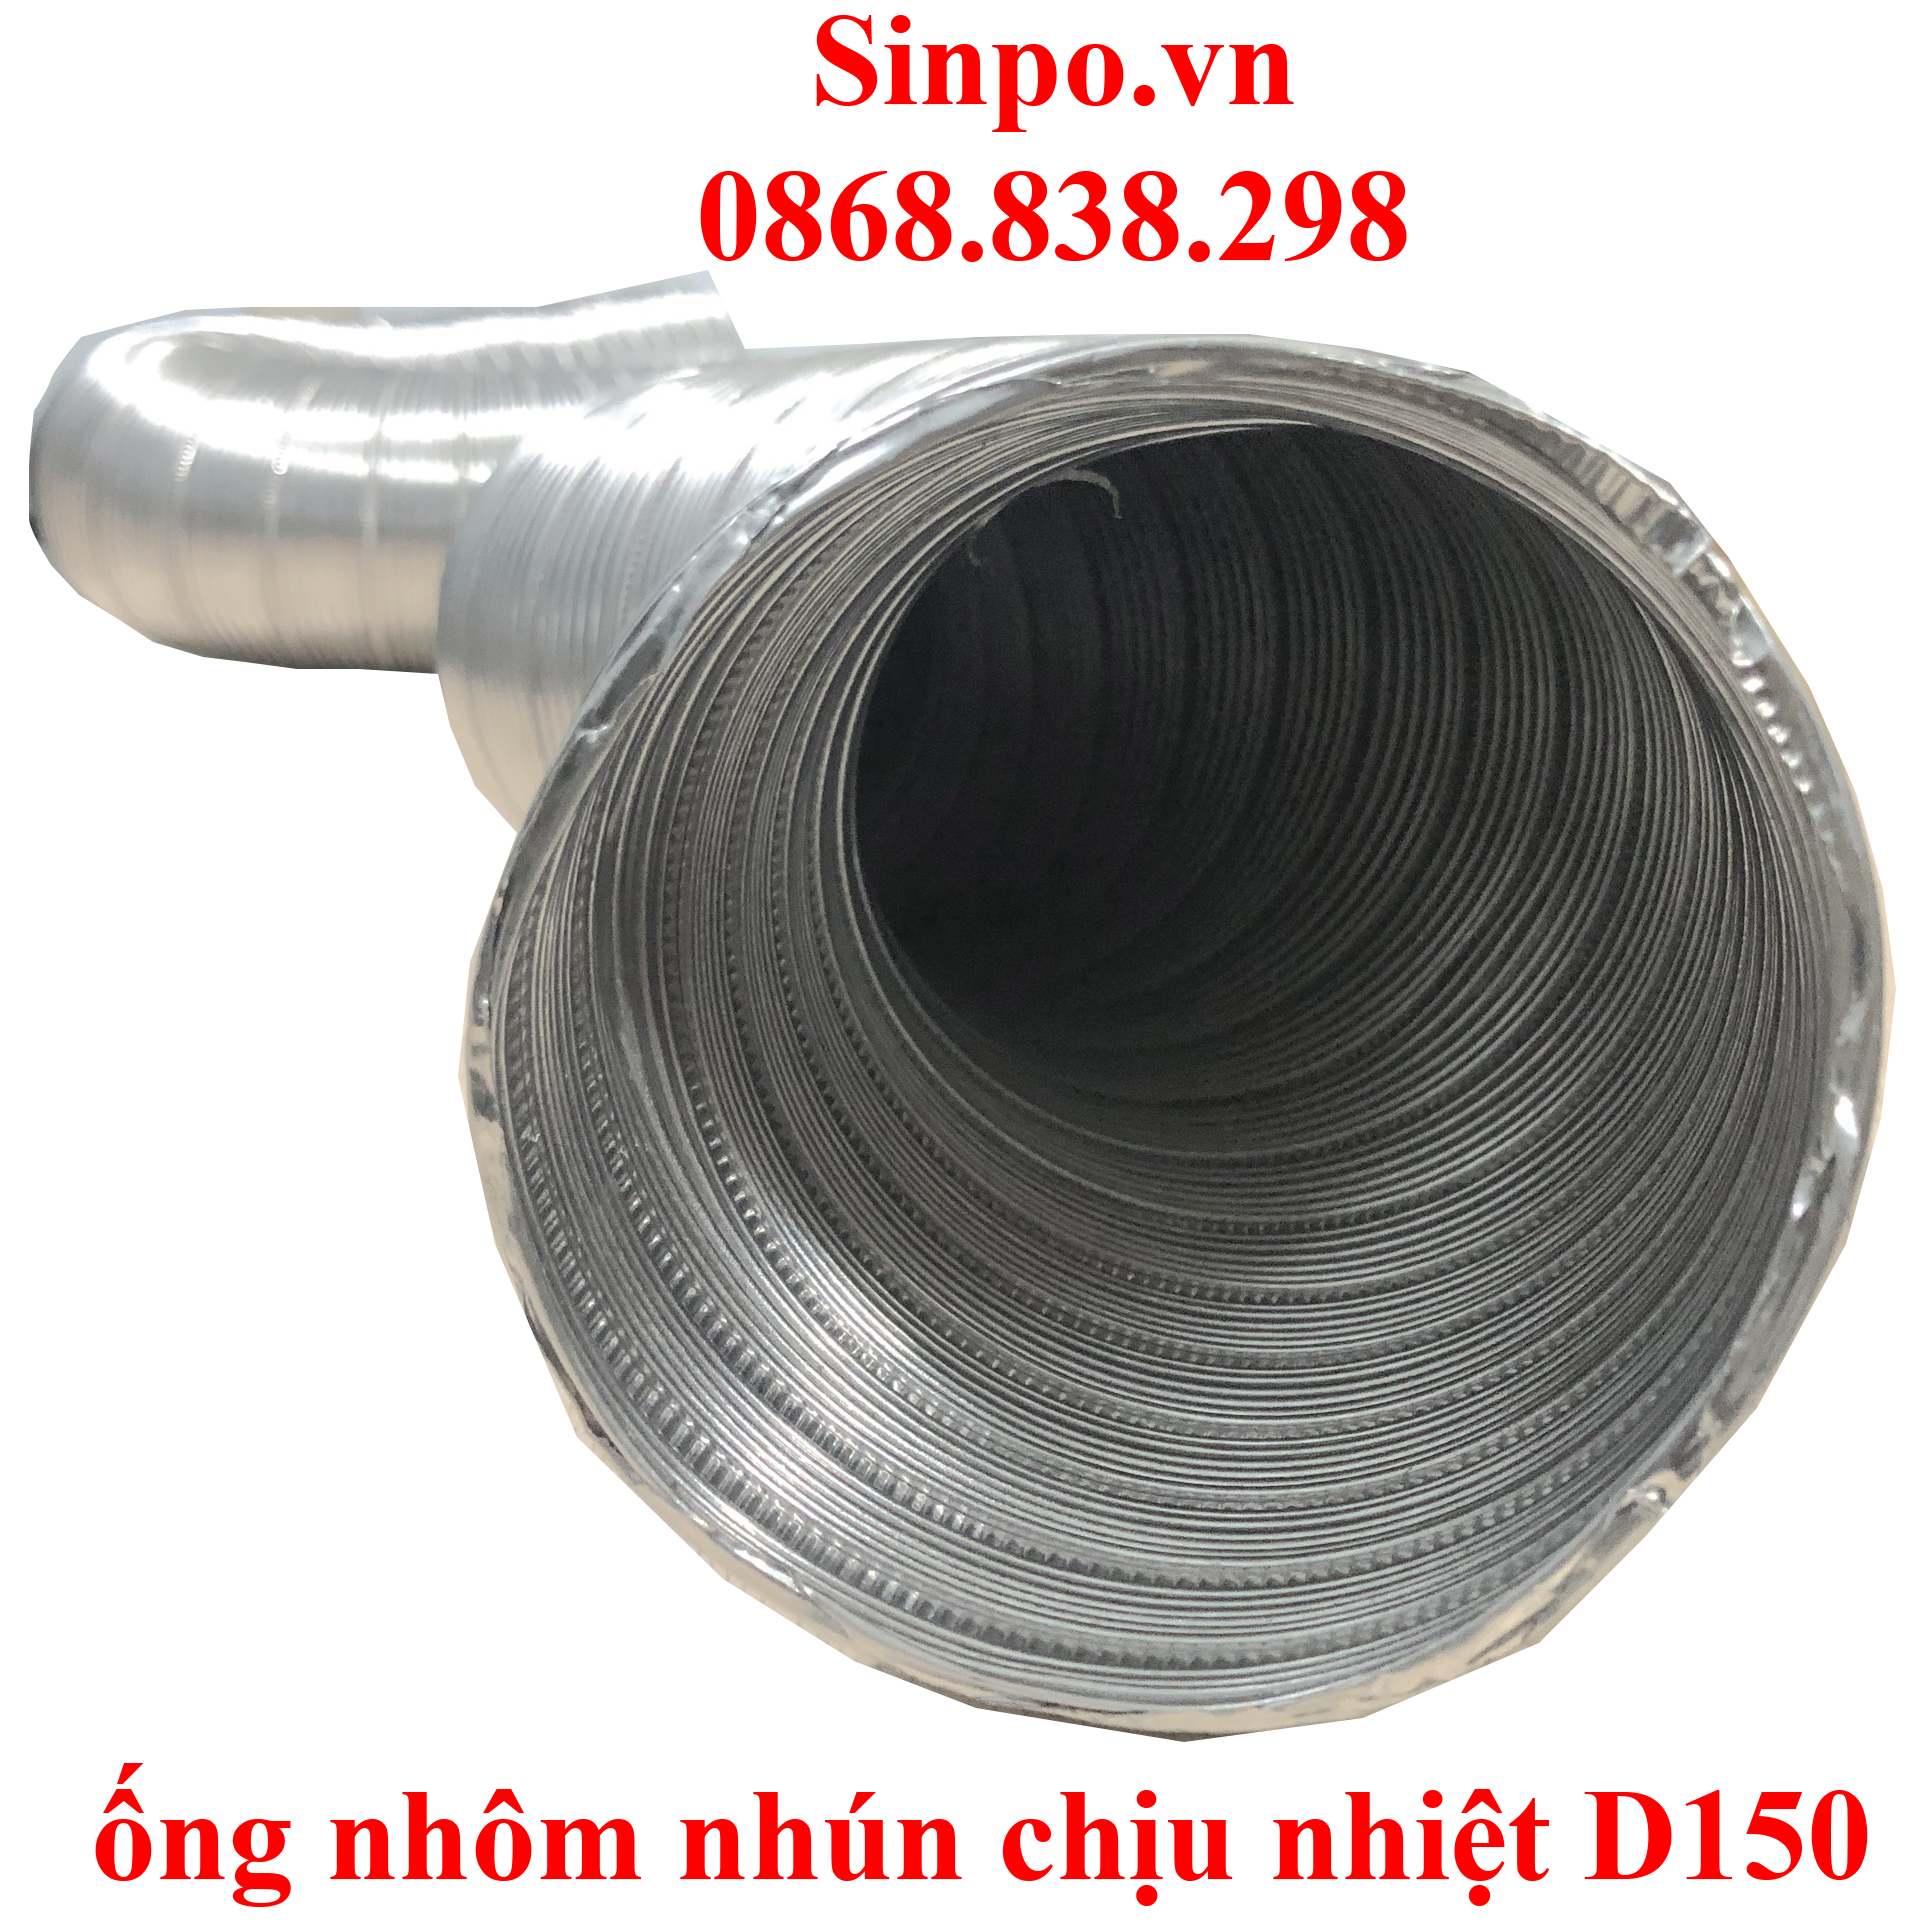 Cung cấp ống nhôm nhún chịu nhiệt D150 mm Tại Hà Nội